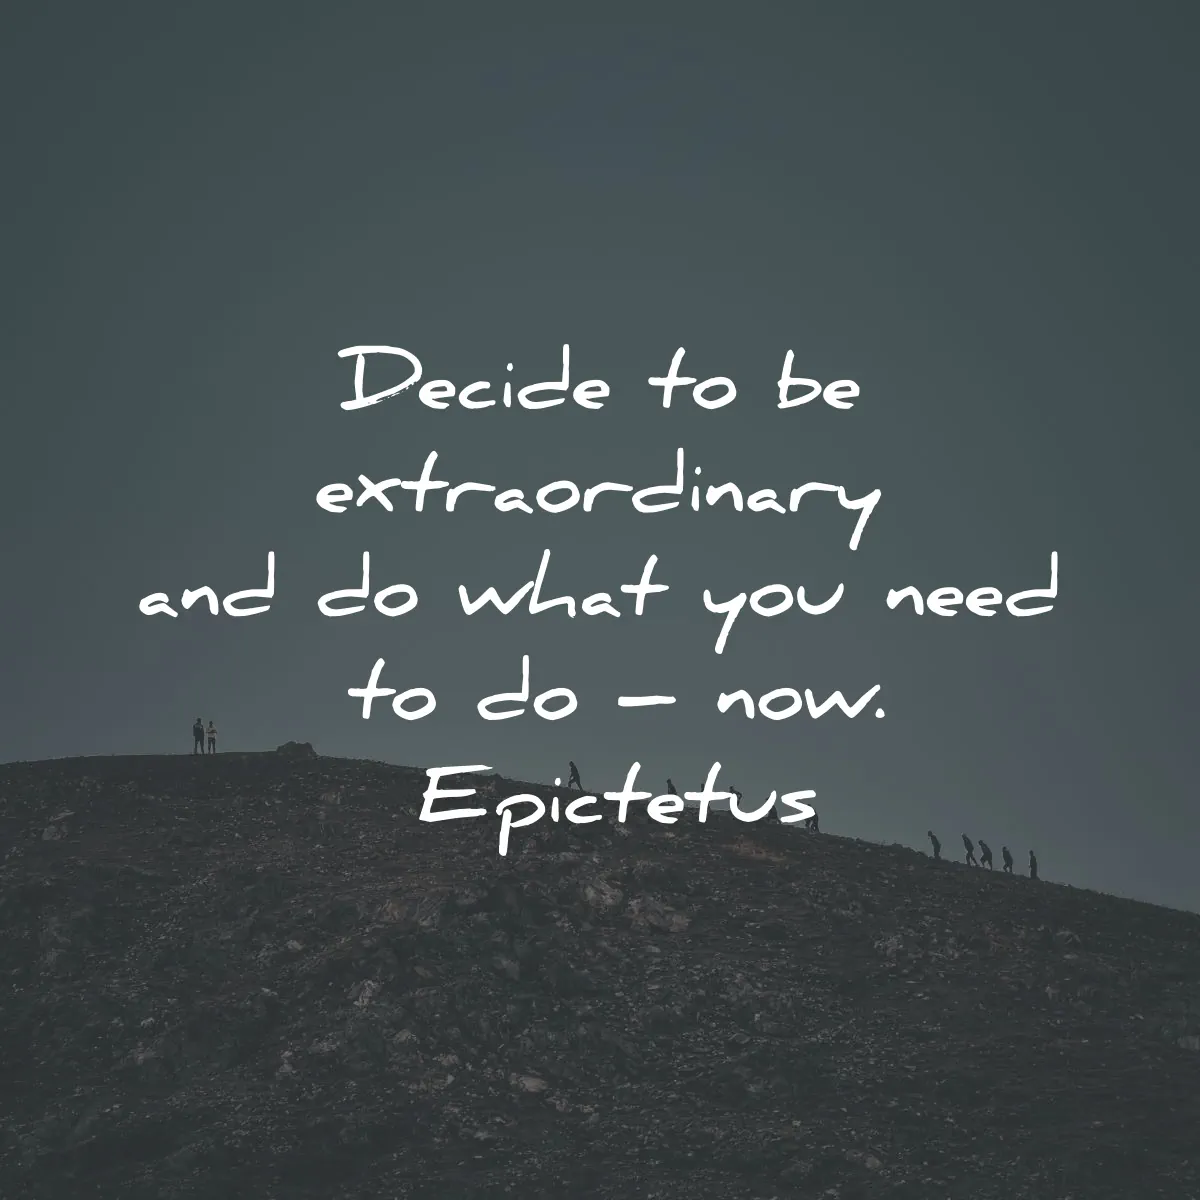 epictetus quotes decide extraordinary what need now wisdom